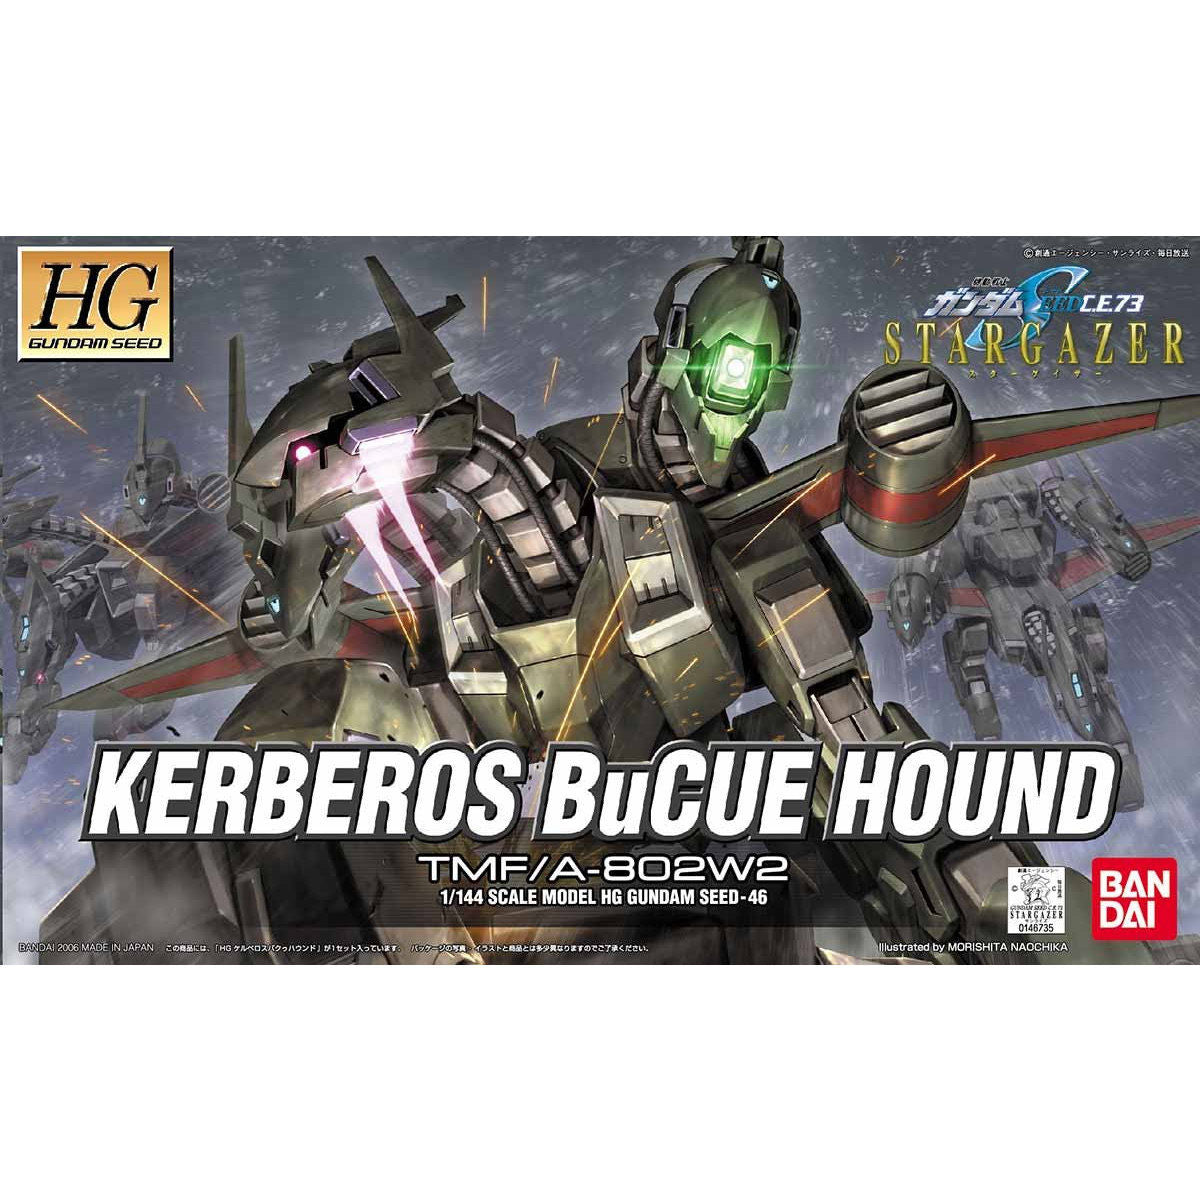 HG Kerberos BuCue Hound TMF/A-802W2 1/144